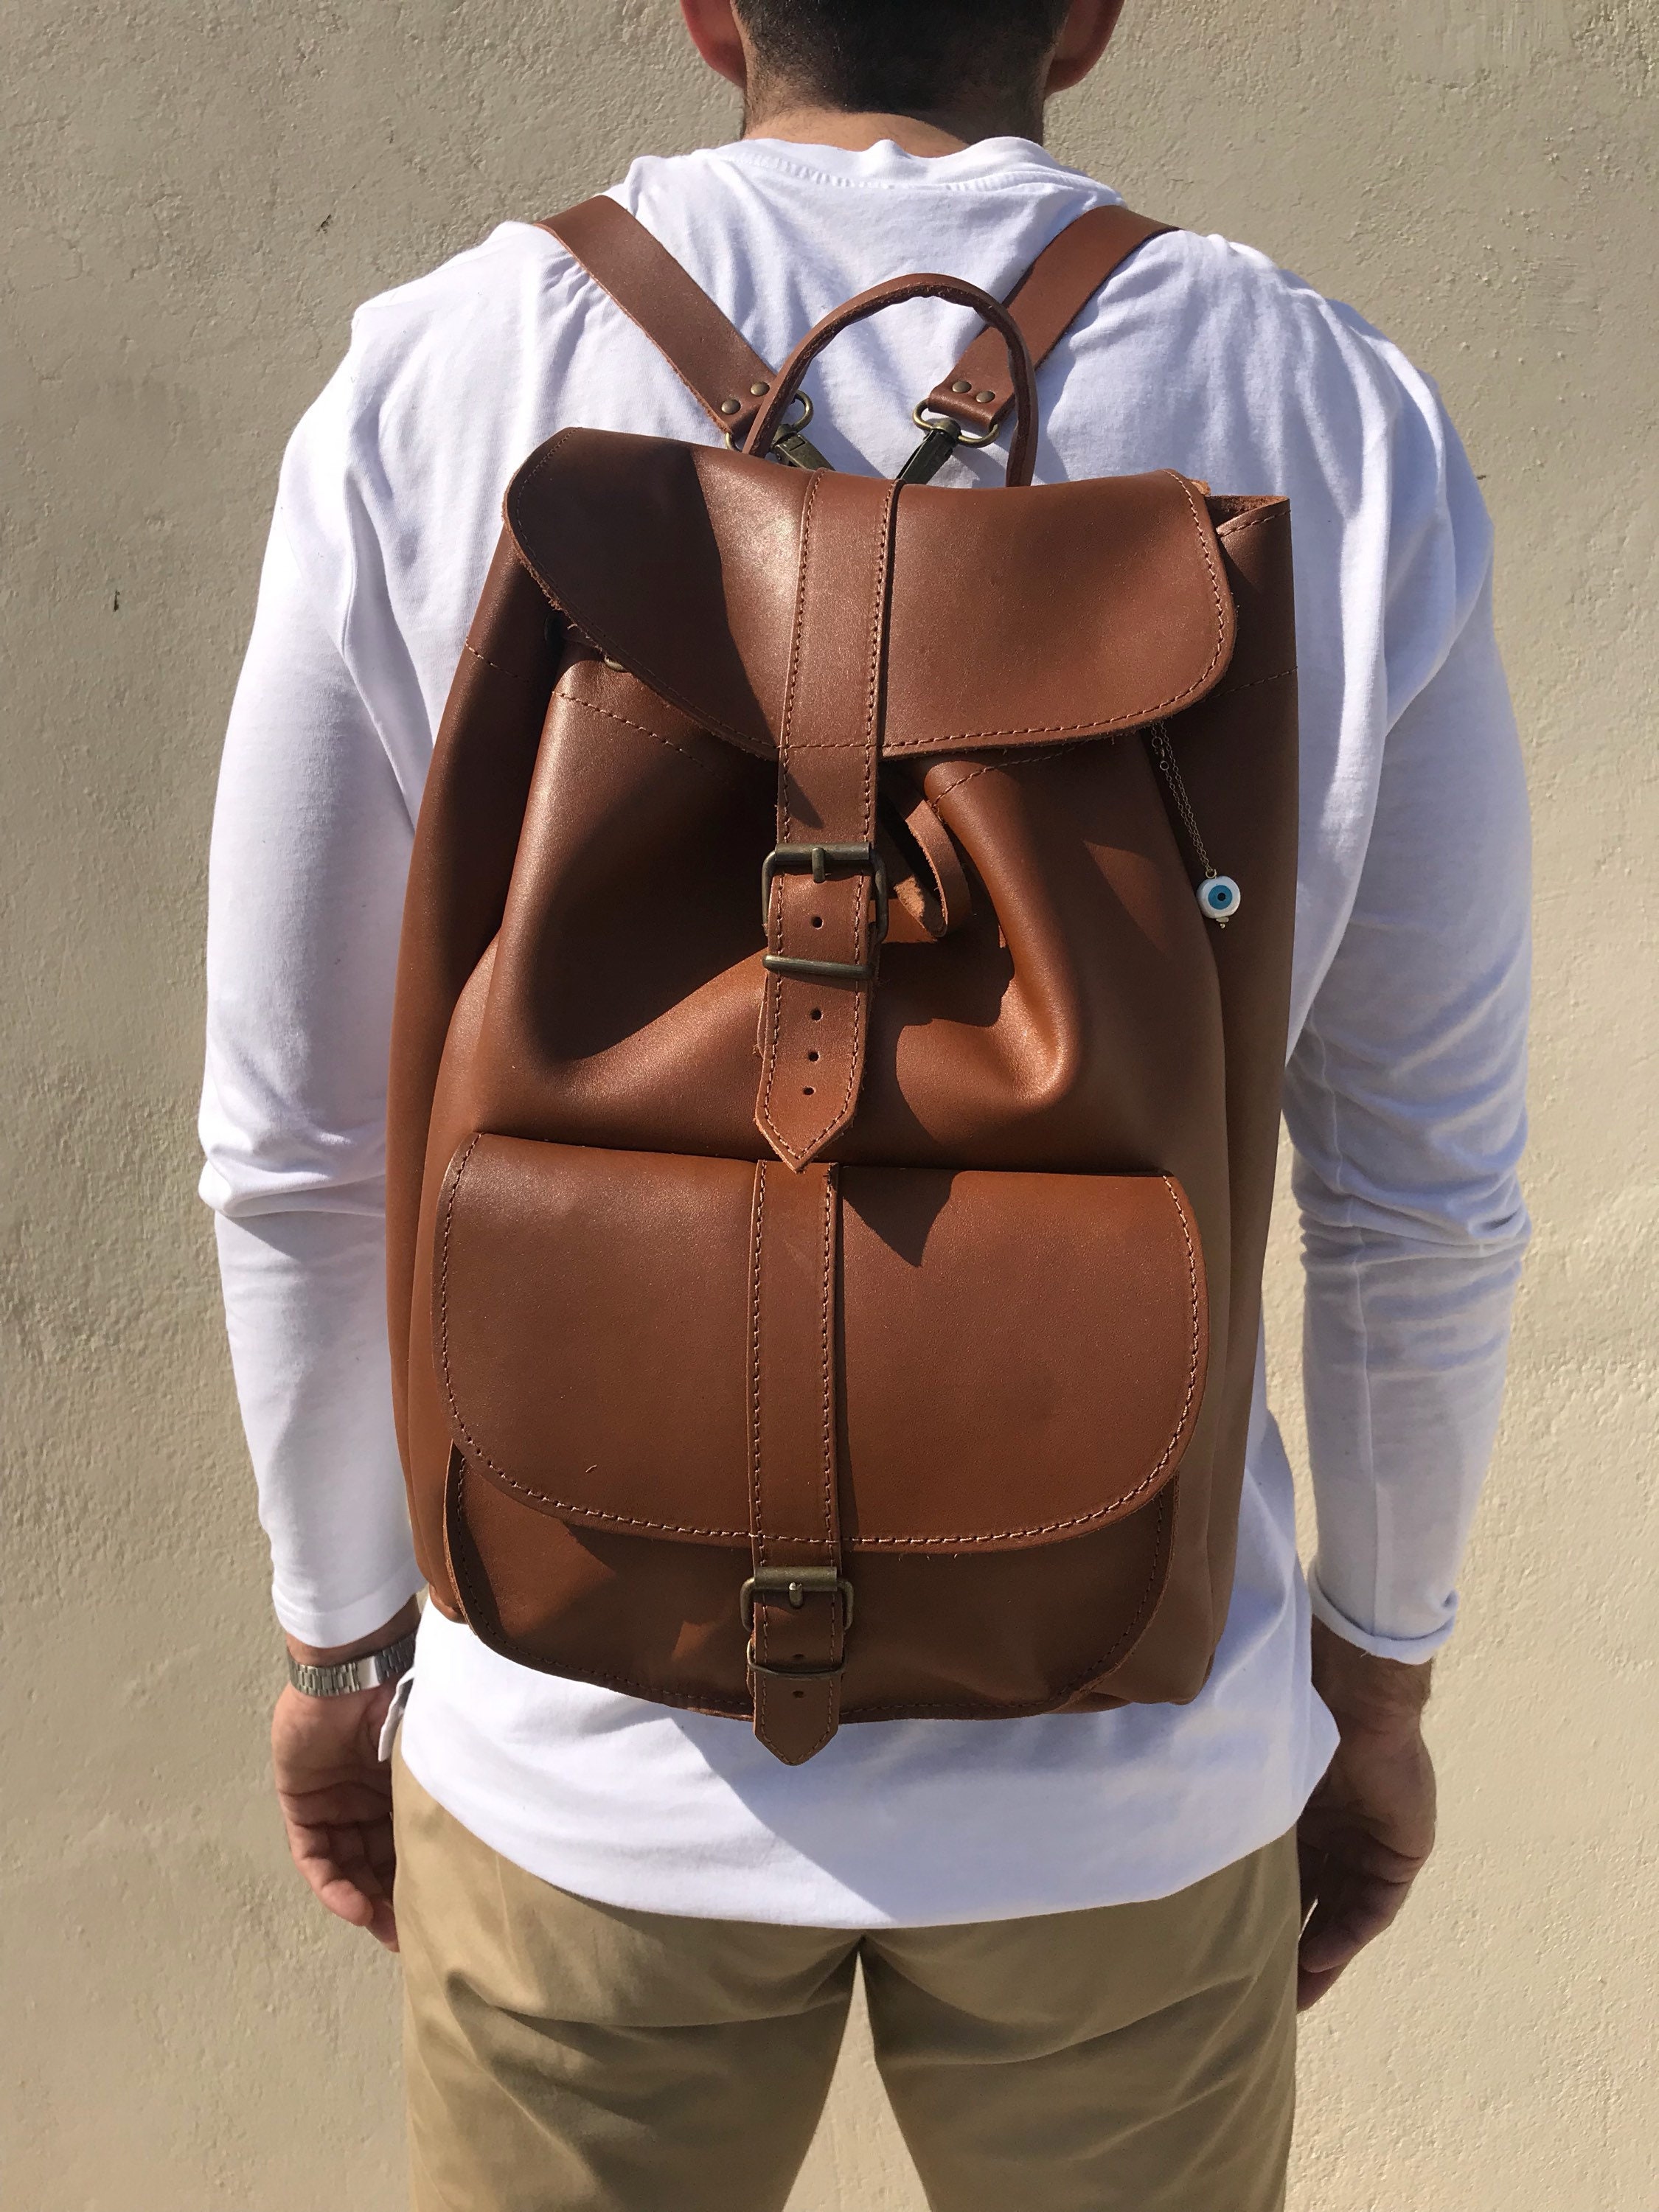 Men's Leather Backpack Brown Backpack Travel Bag Gift | Etsy